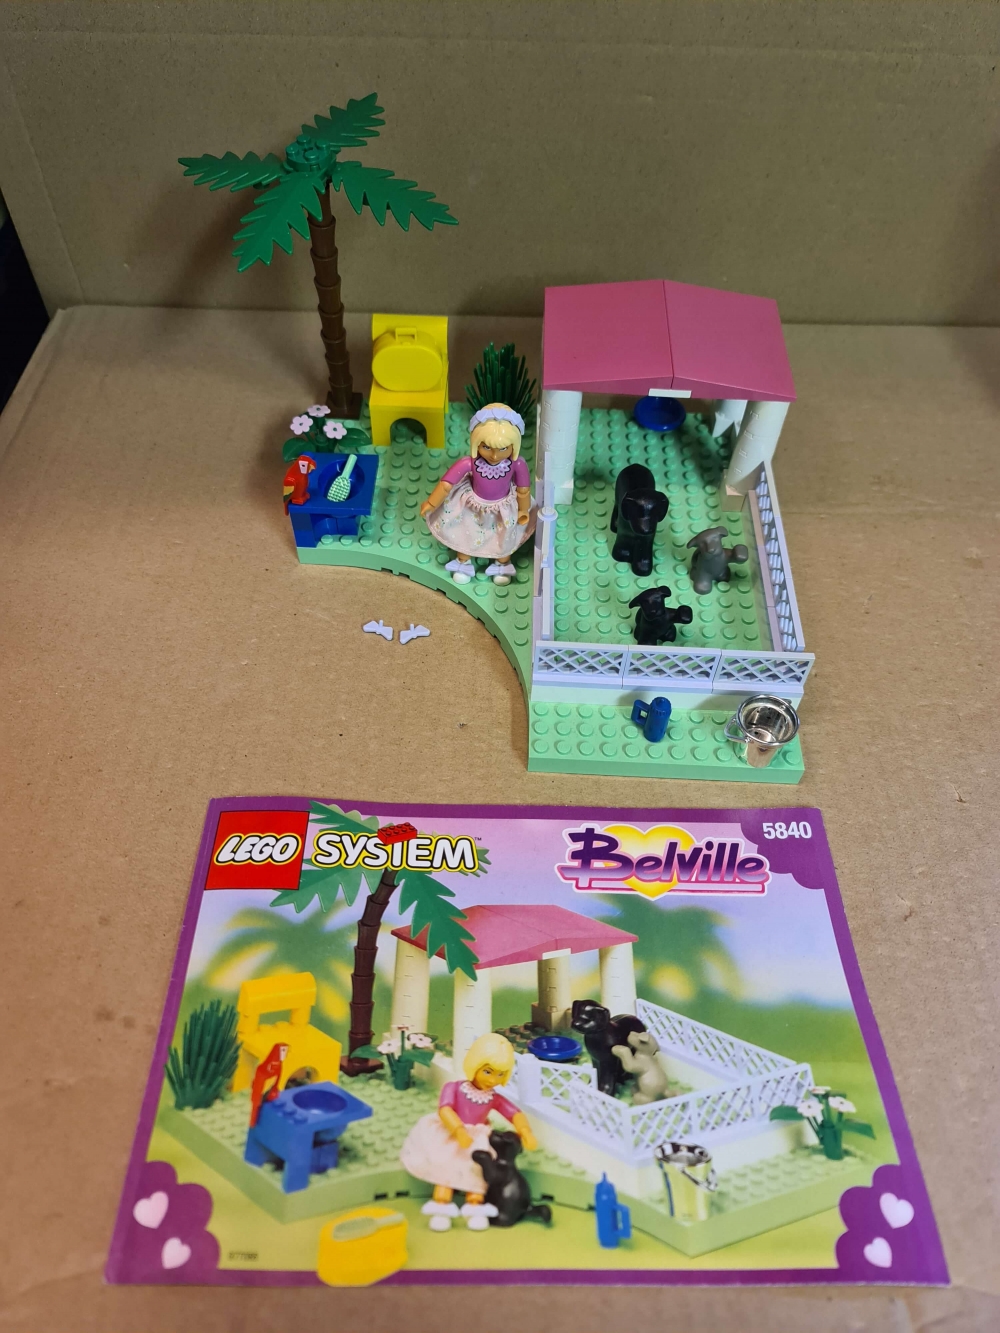 Sett 5840 fra Lego Belville serien.
Komplett med manual.
Noe solskader på enkelte brikker. Se bilder.